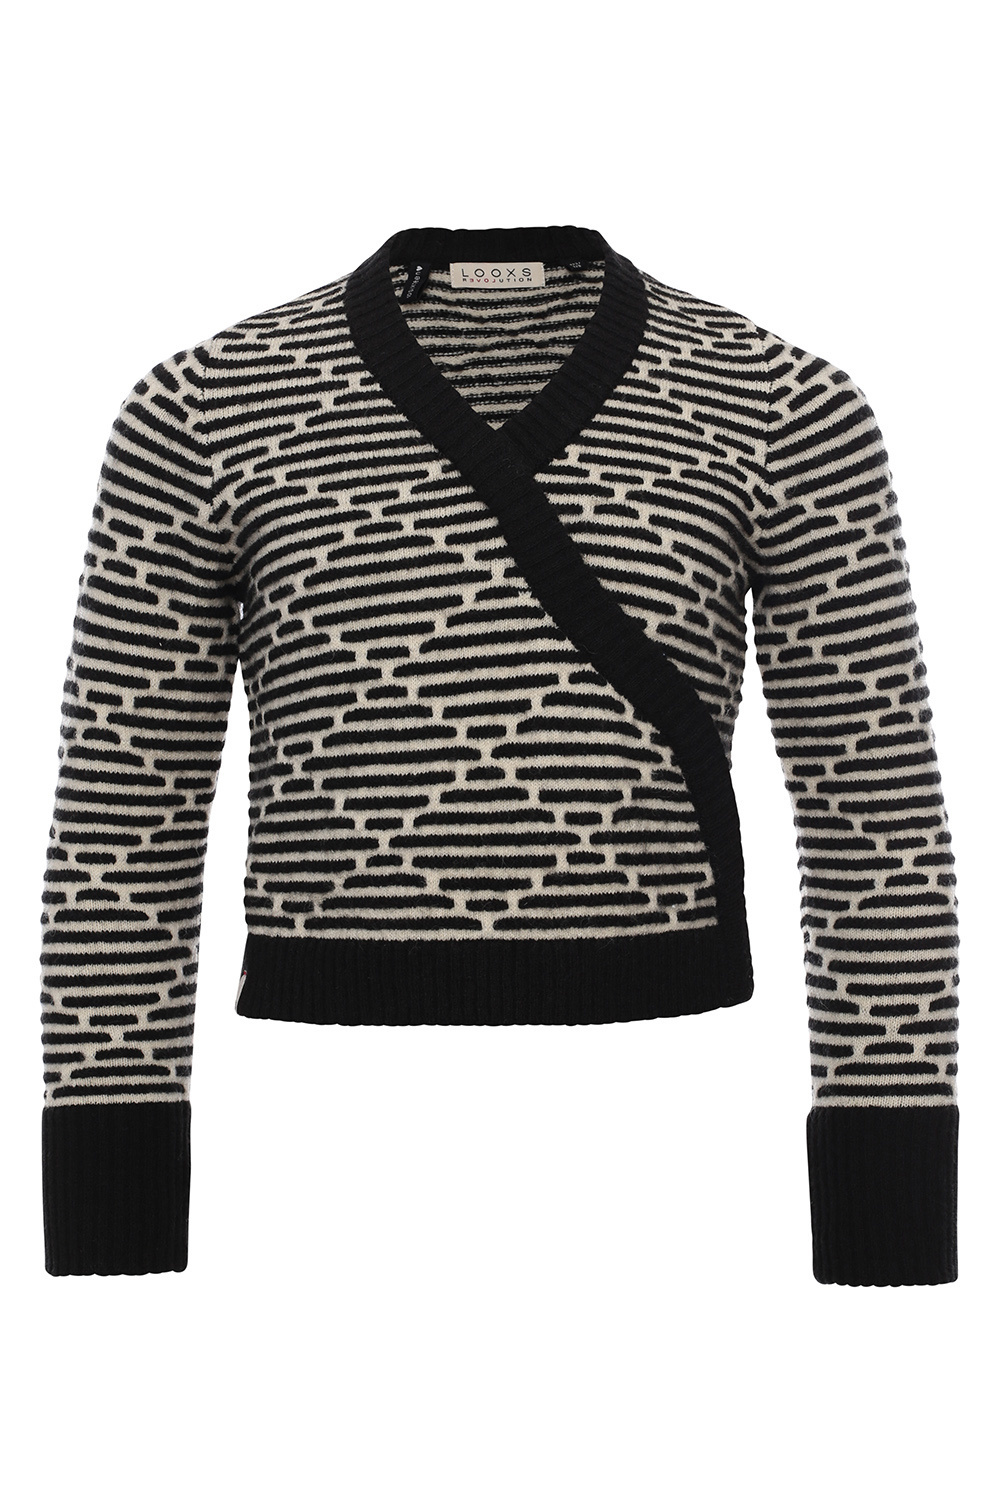 Looxs Revolution 2232-5364-099 Meisjes Sweater/Vest - Maat 152 - Zwart van Wol